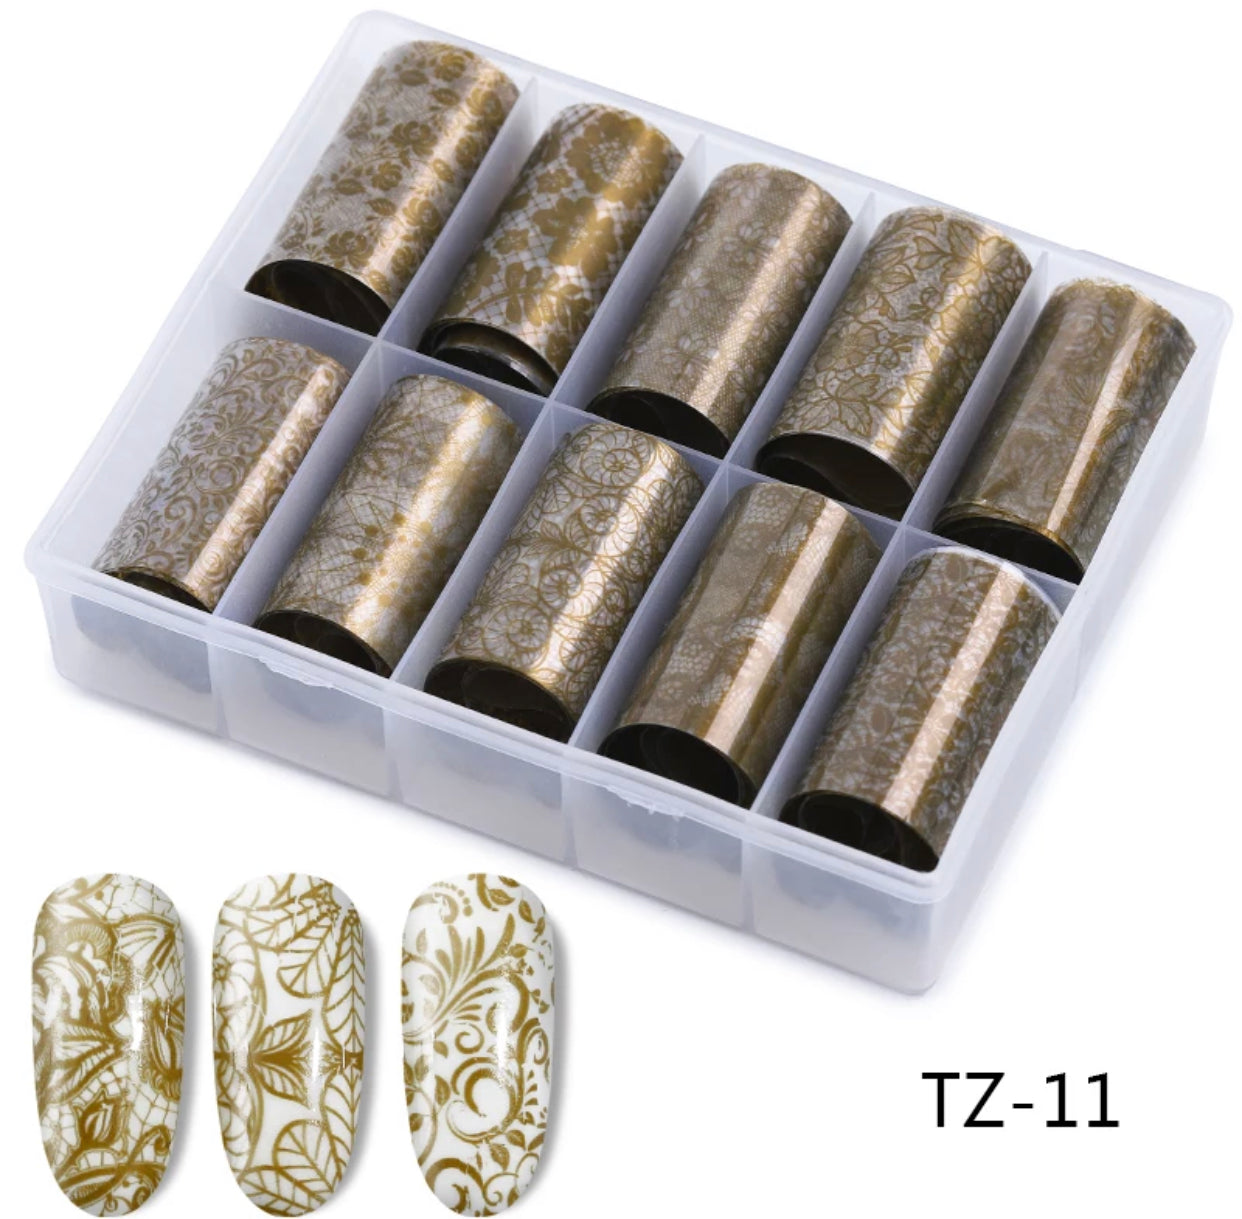 Transparent Gold Paten Foil Set TZ-11 - Premier Nail Supply 